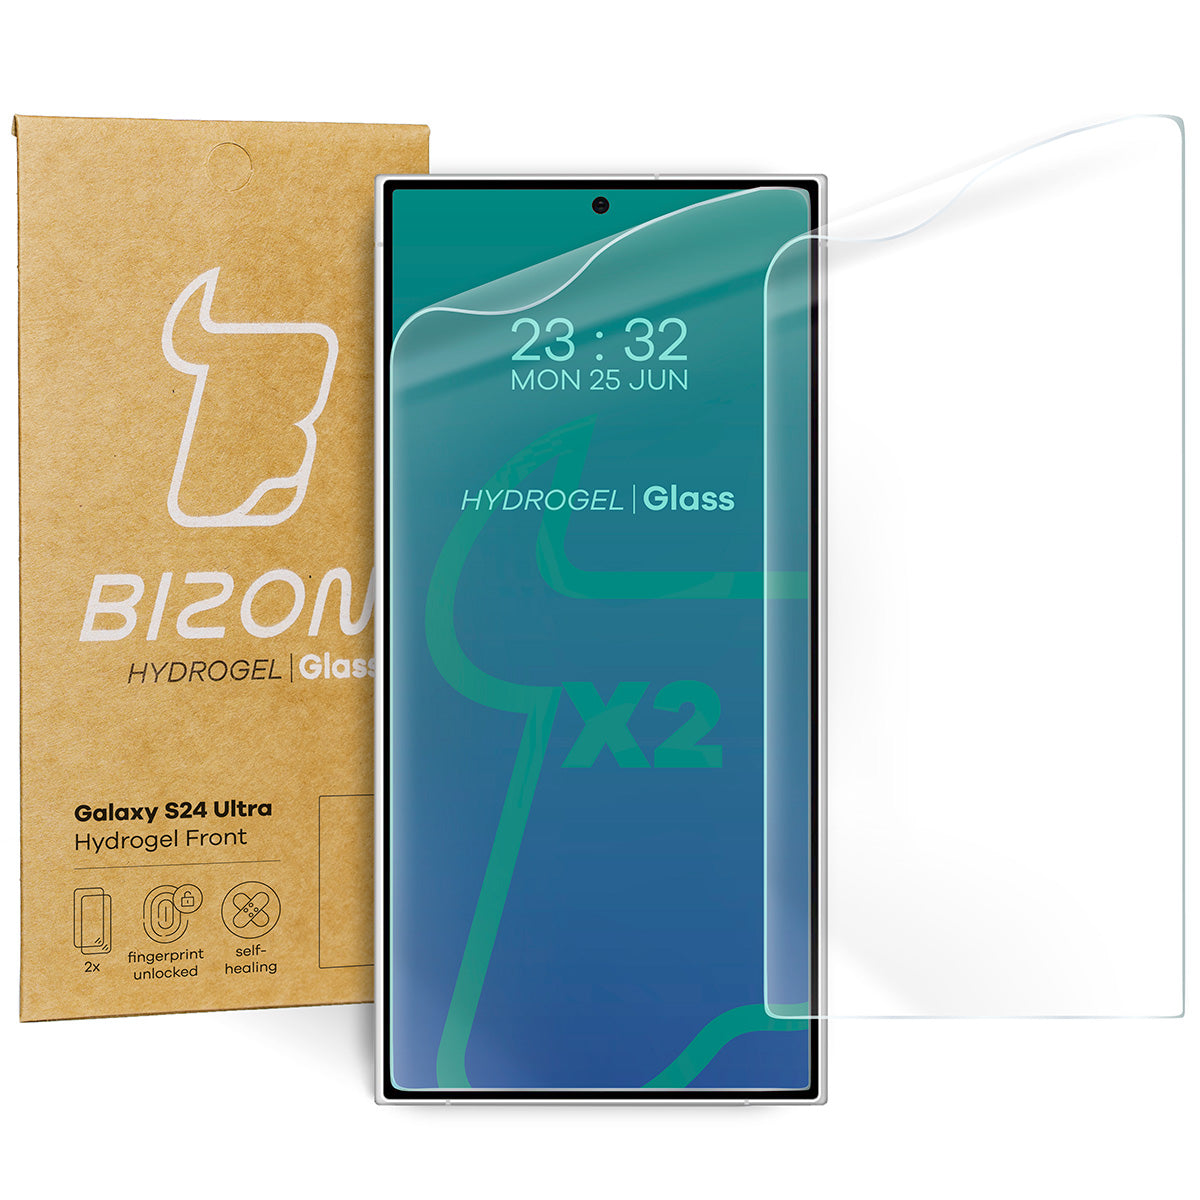 Hydrogel Folie für den Bildschirm für Galaxy S24 Ultra, Bizon Glass Hy